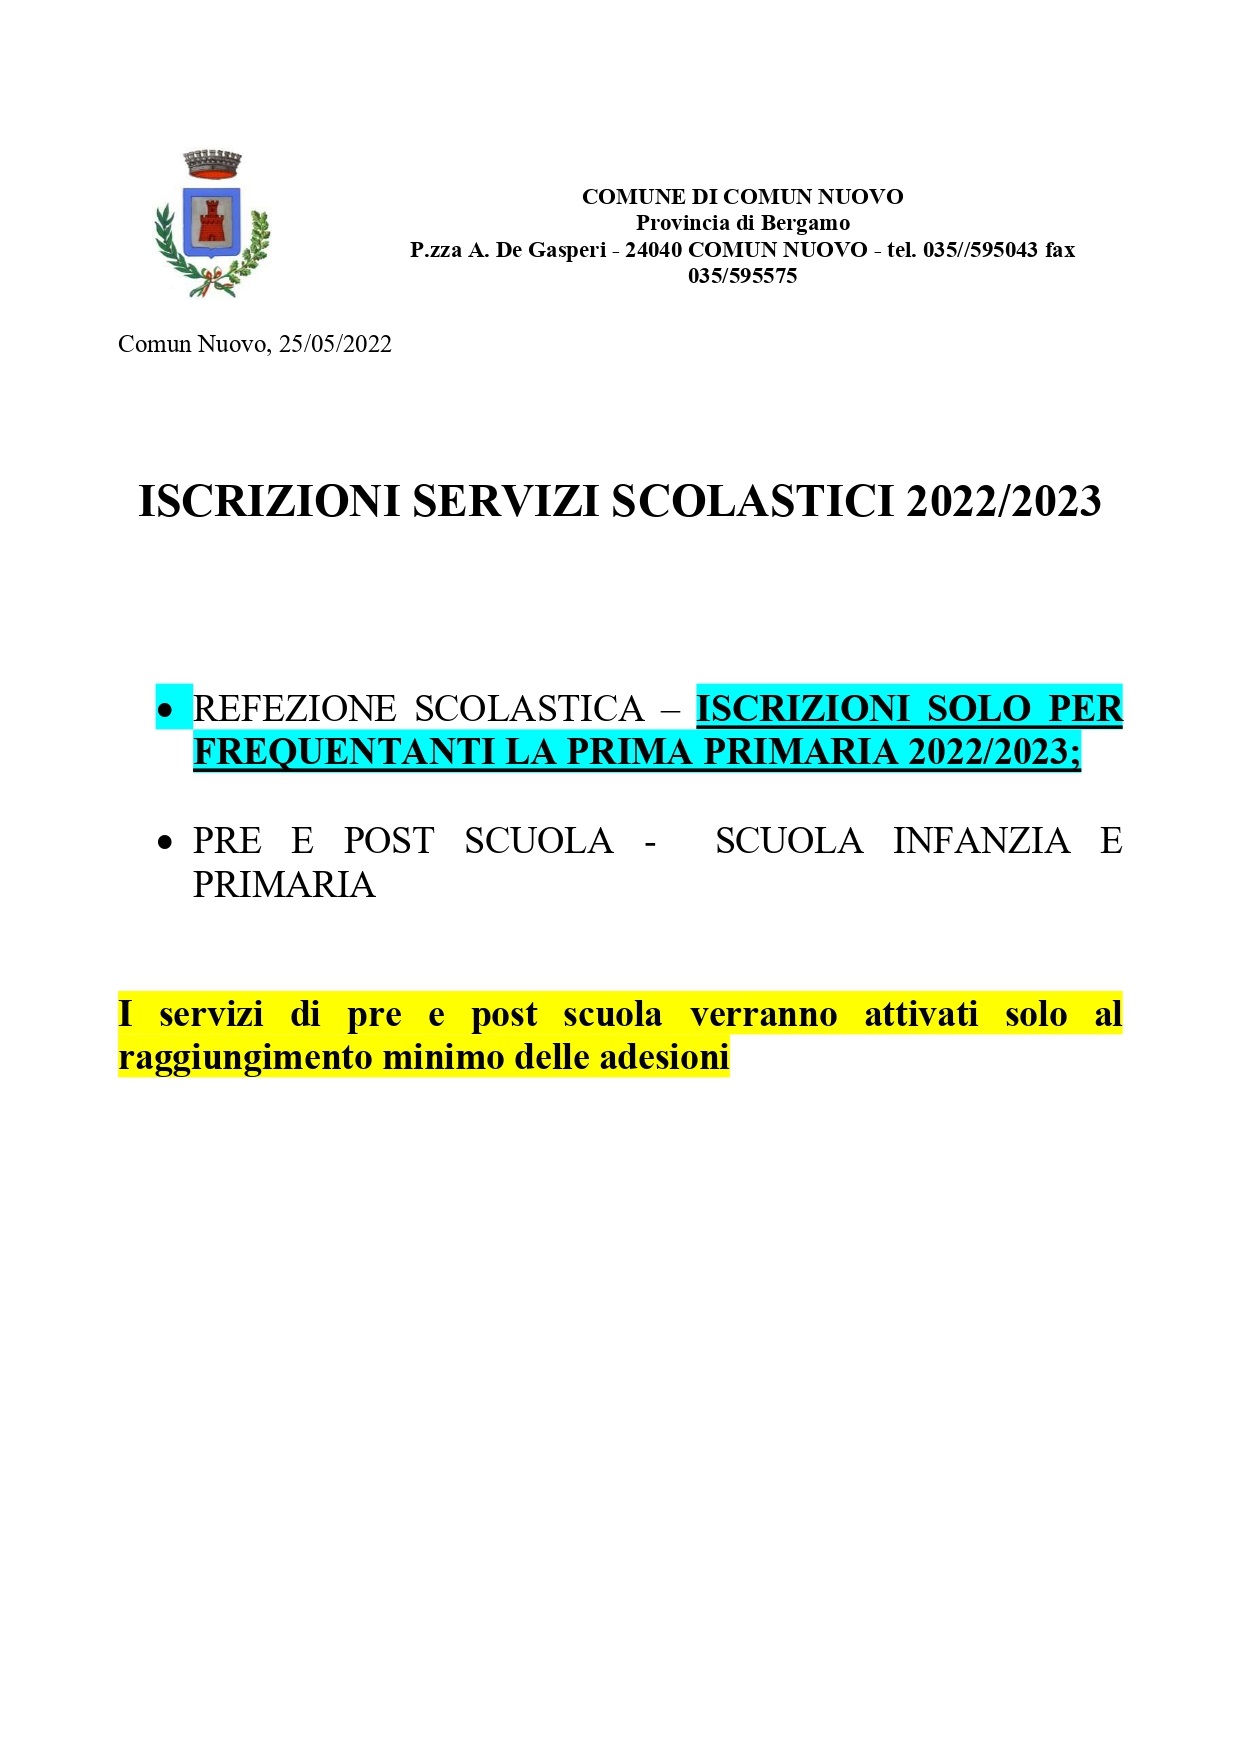 ISCRIZIONI SERVIZI SCOLASTICI 2022.2023 - scadenza 30/06/2022